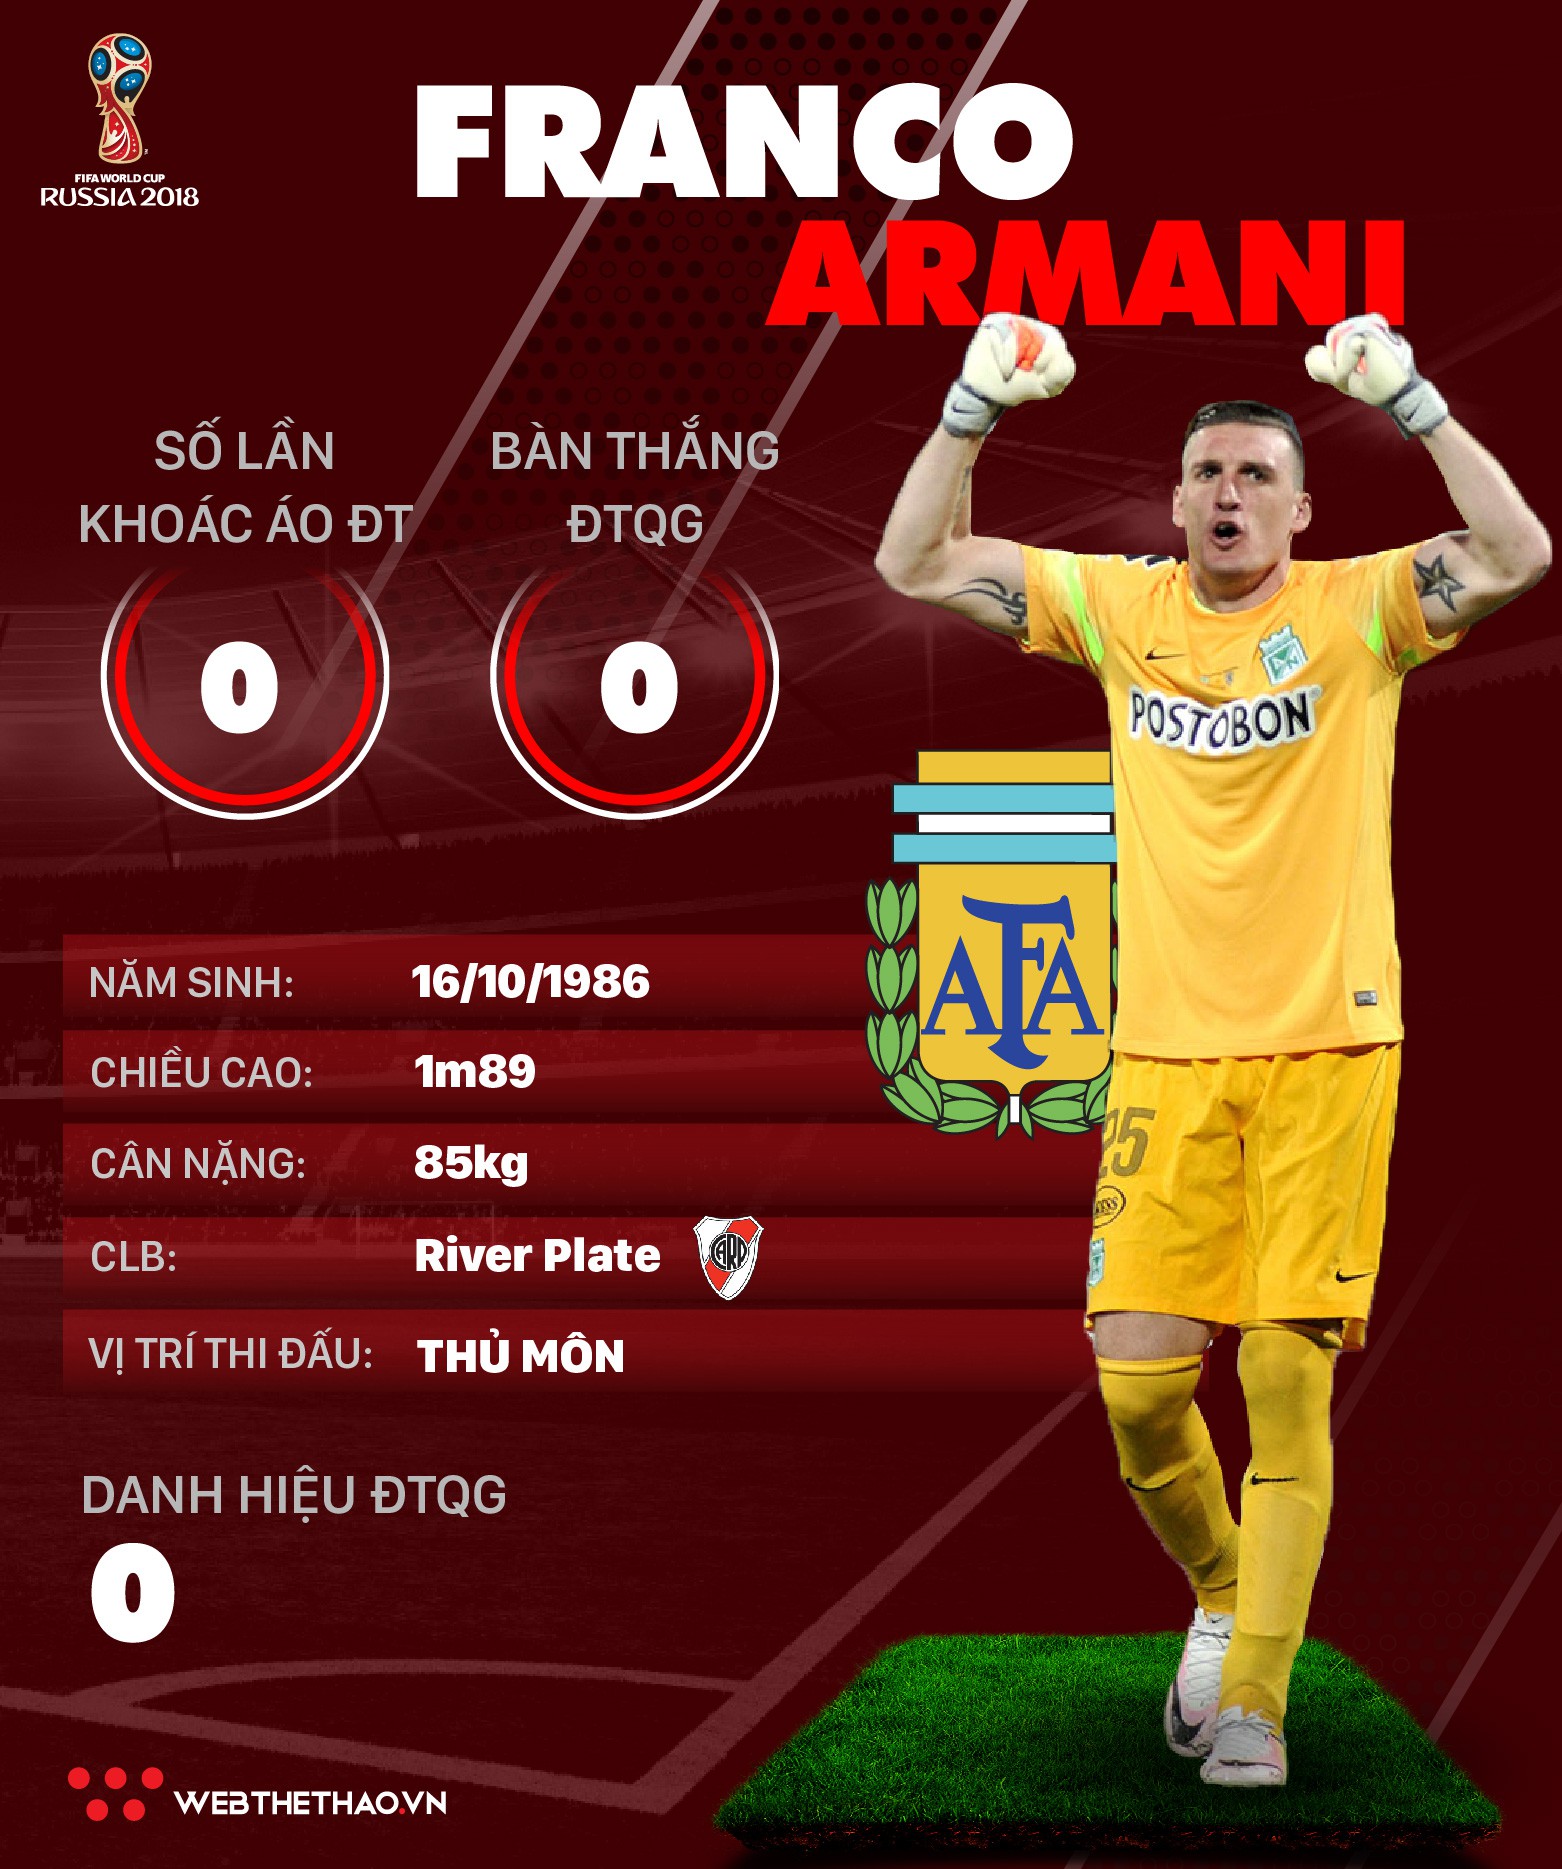 Thông tin cầu thủ Franco Armani của ĐT Argentina dự World Cup 2018 - Ảnh 1.